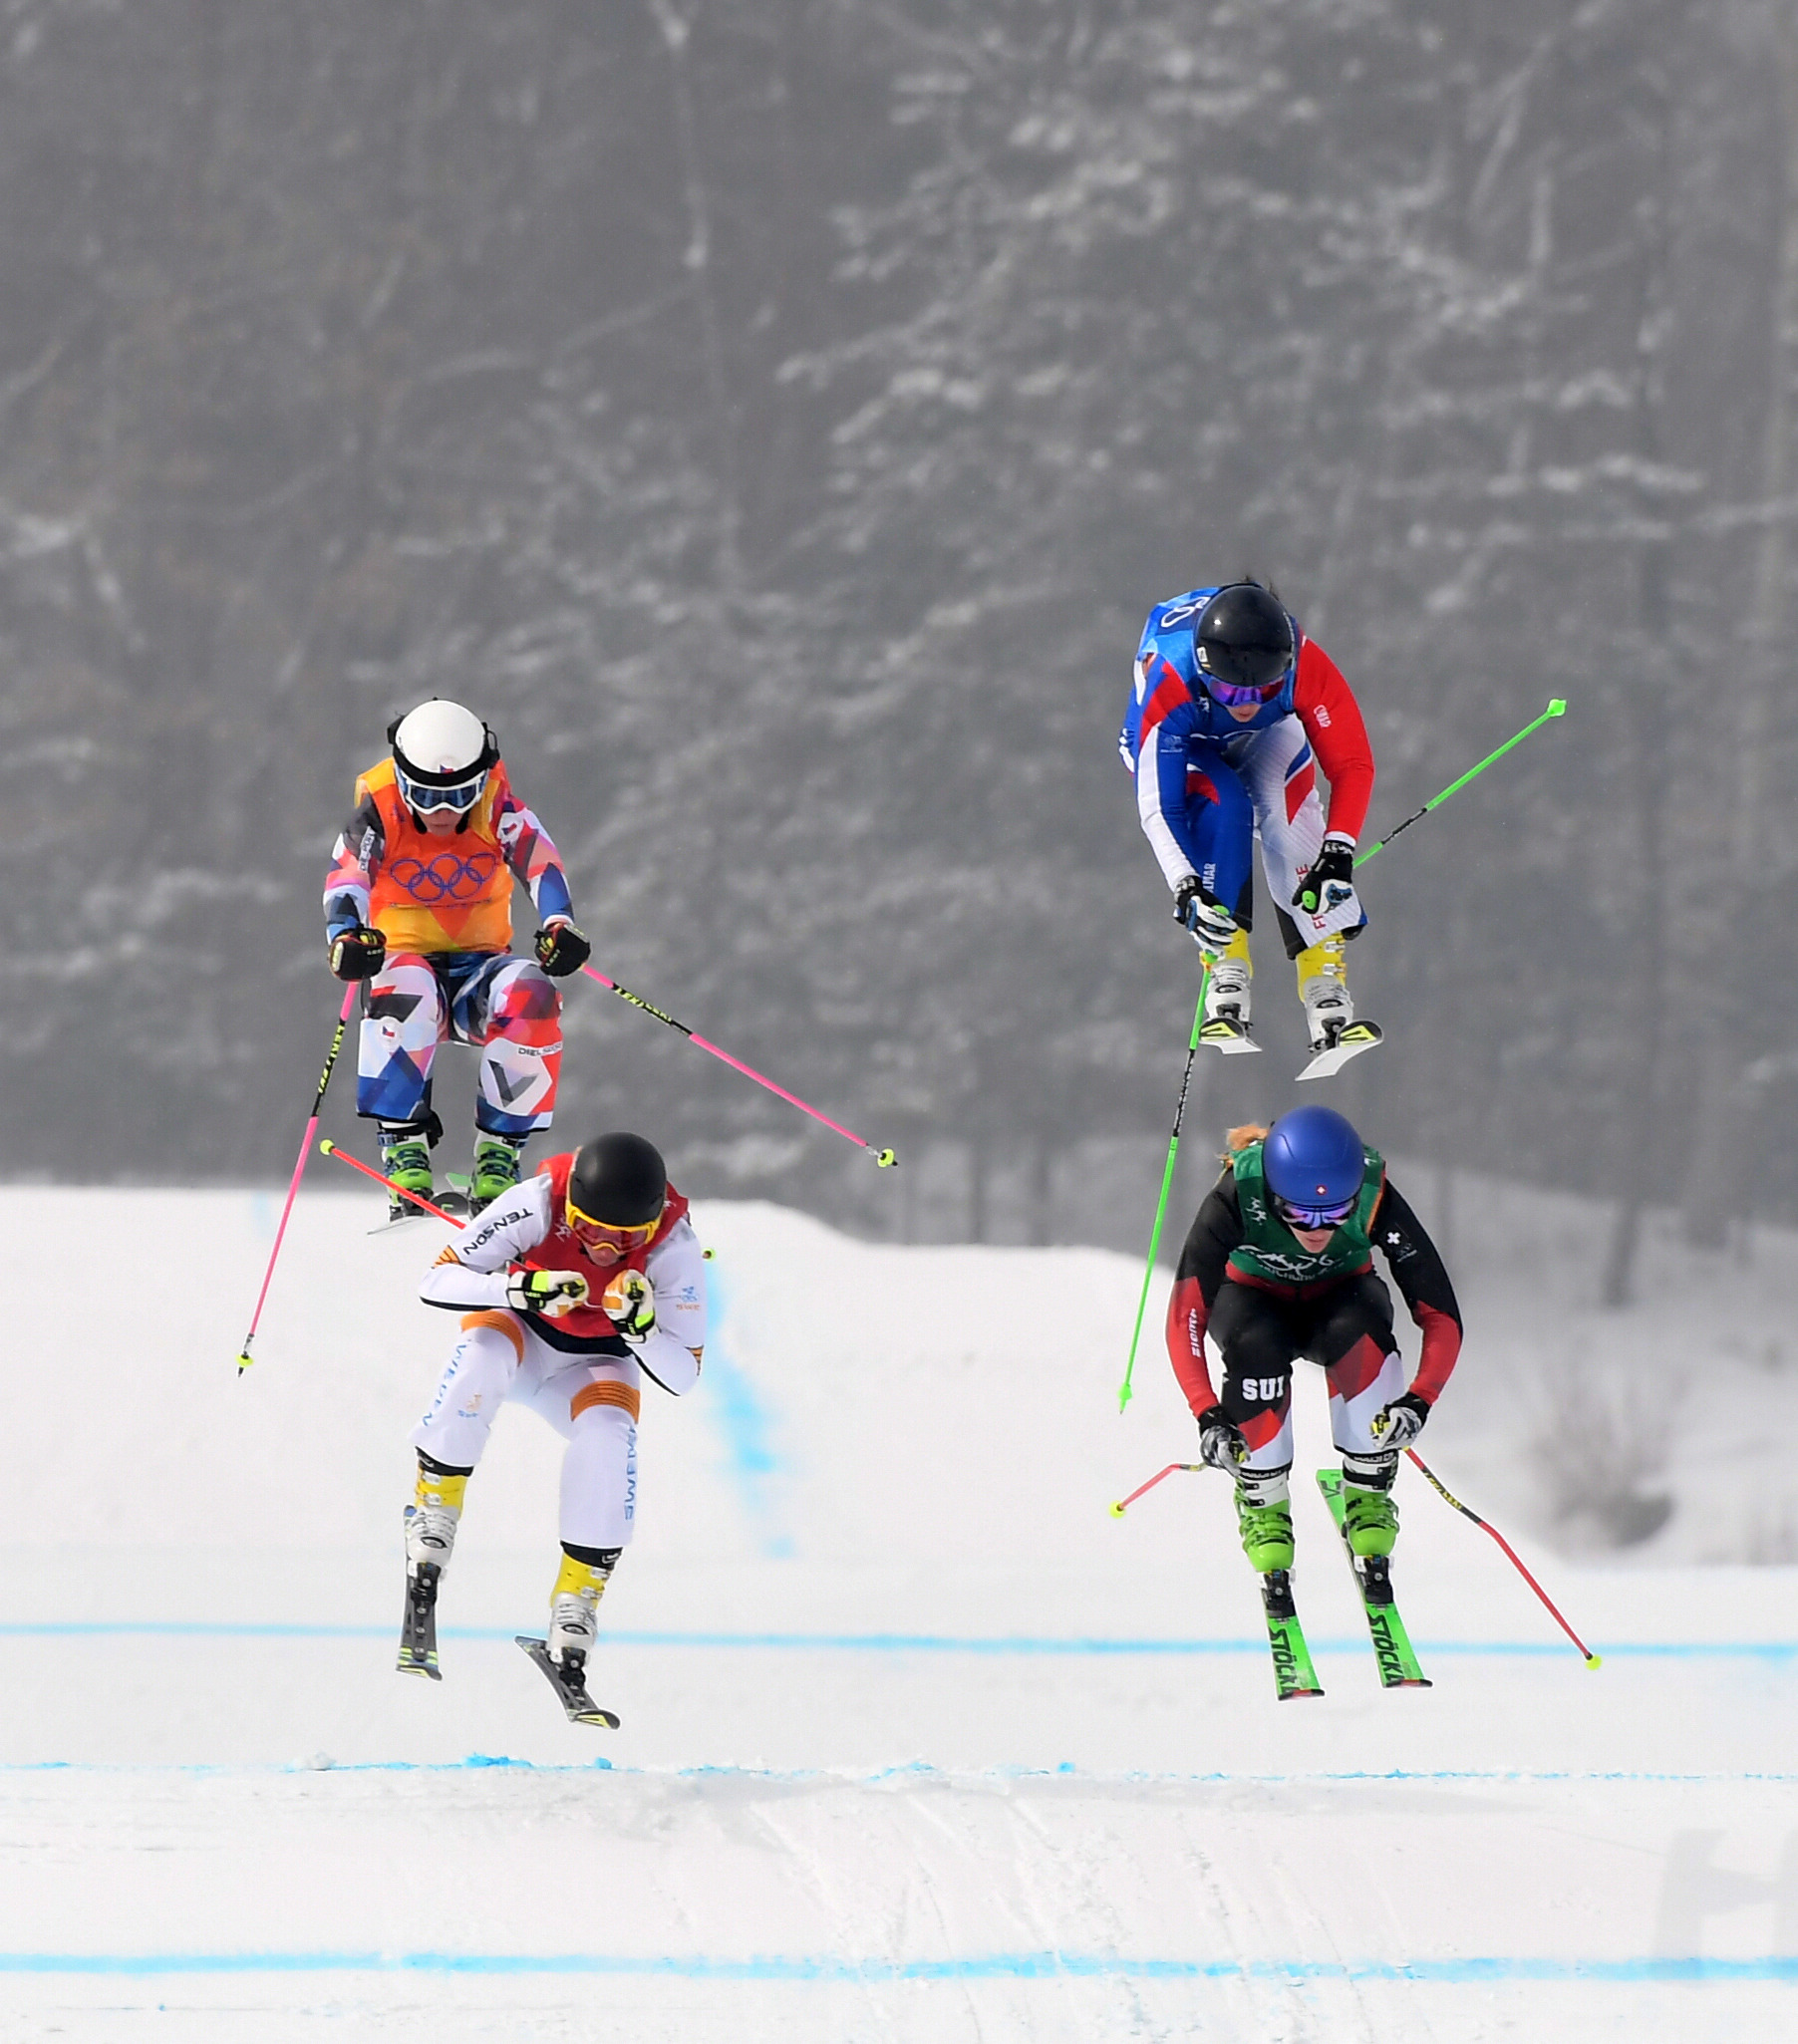 组图:自由式滑雪障碍追逐赛 加拿大选手庆祝夺冠